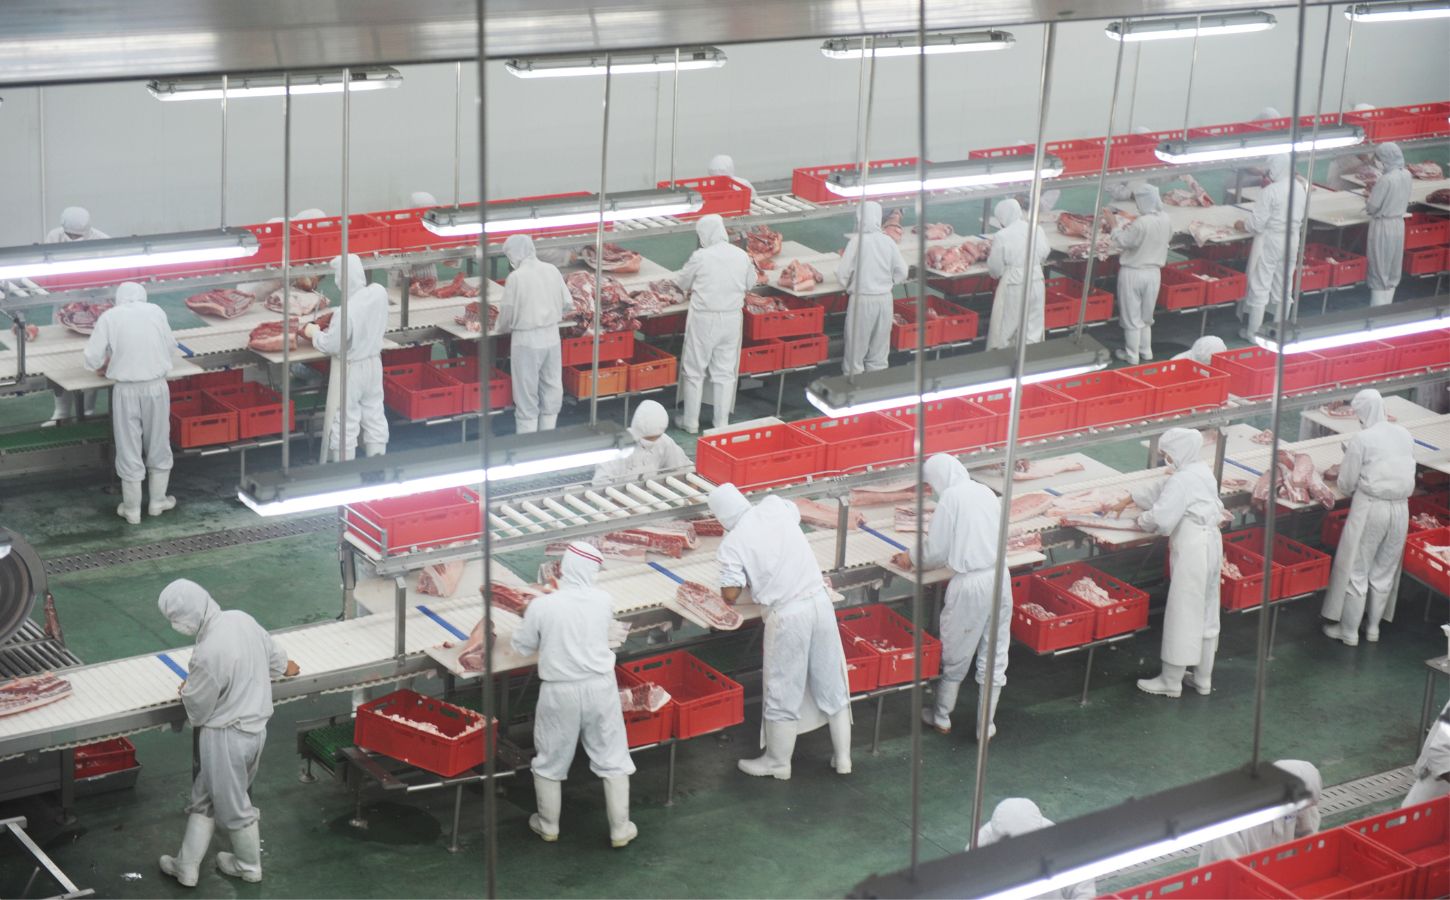 Slaughterhouse workers preparing meat